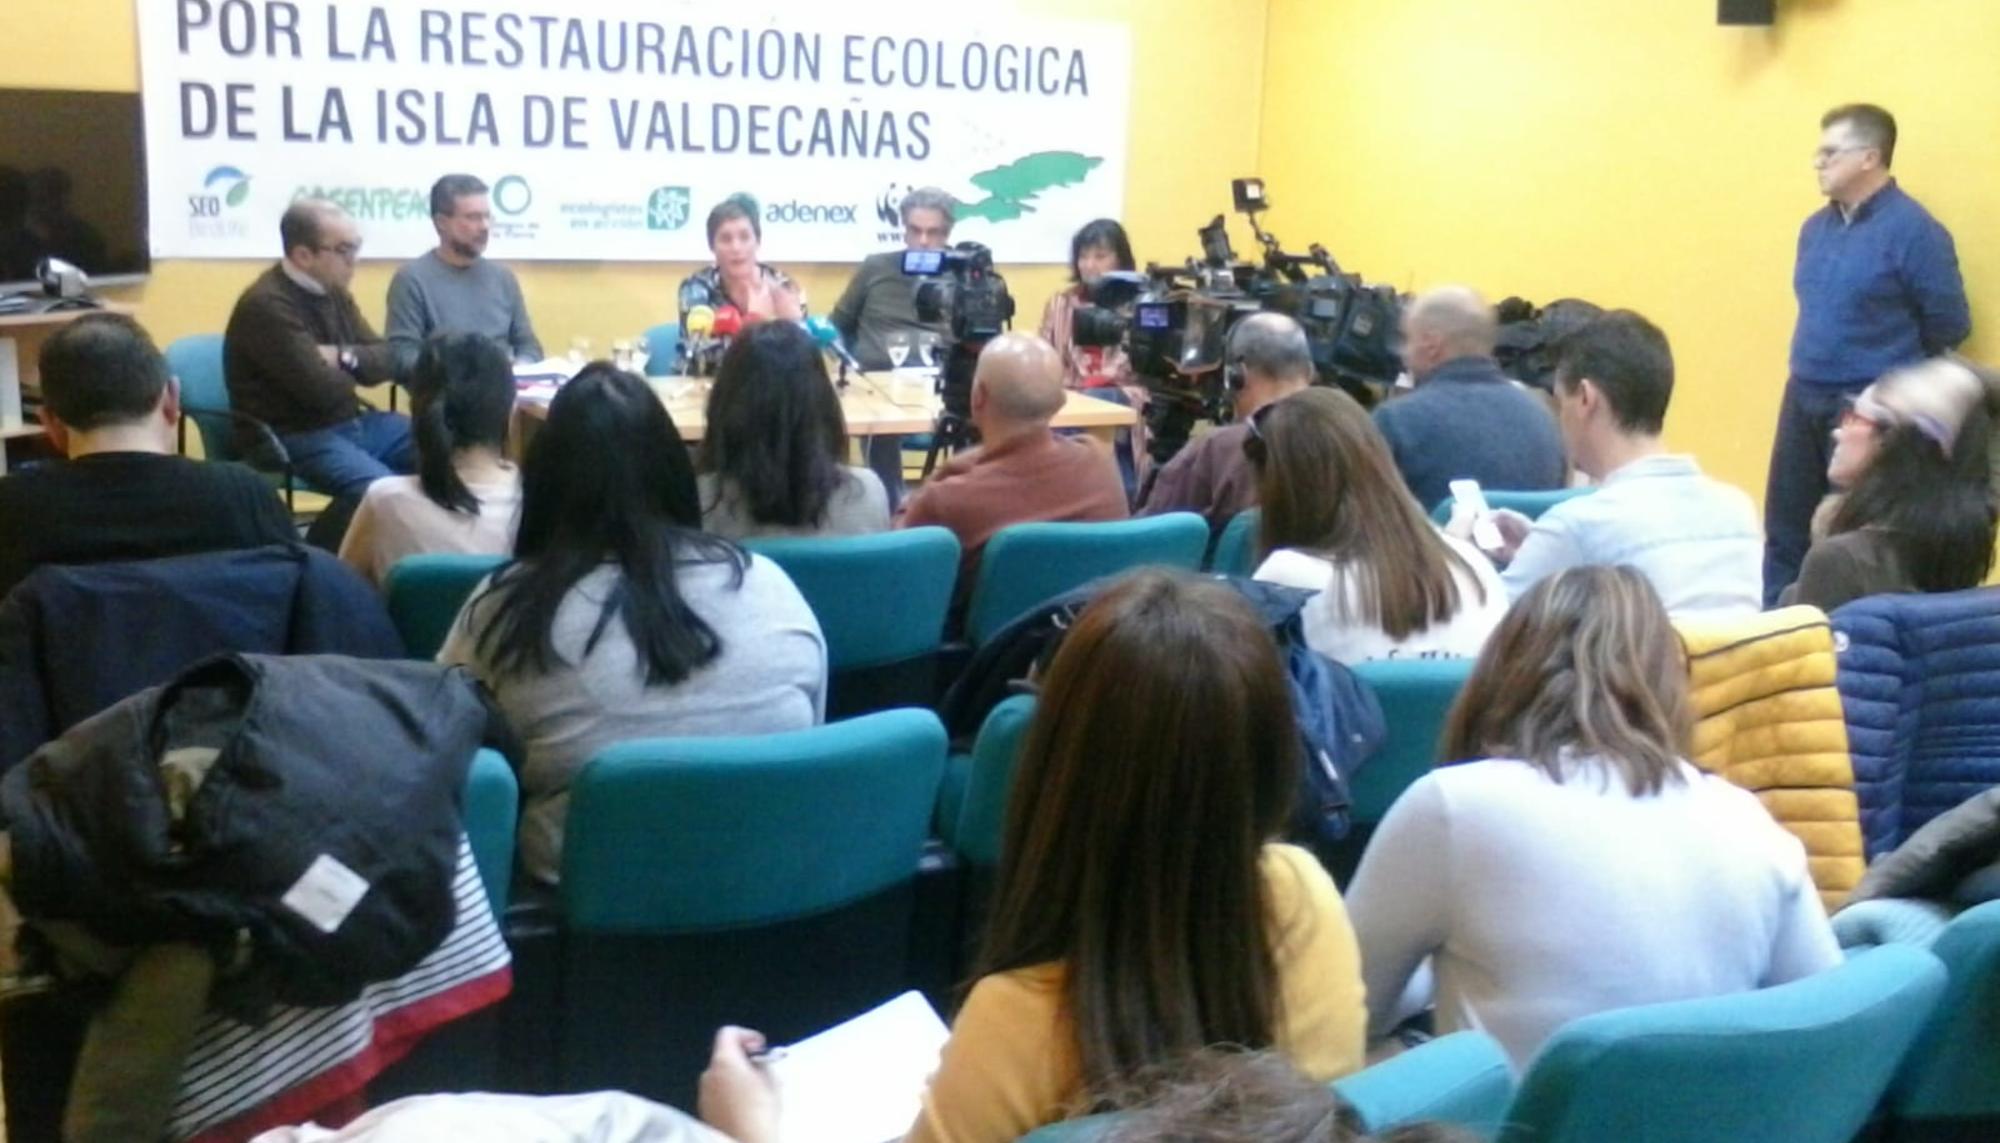 Rueda de prensa Valdecañas en Mérida, enero 2020. 2